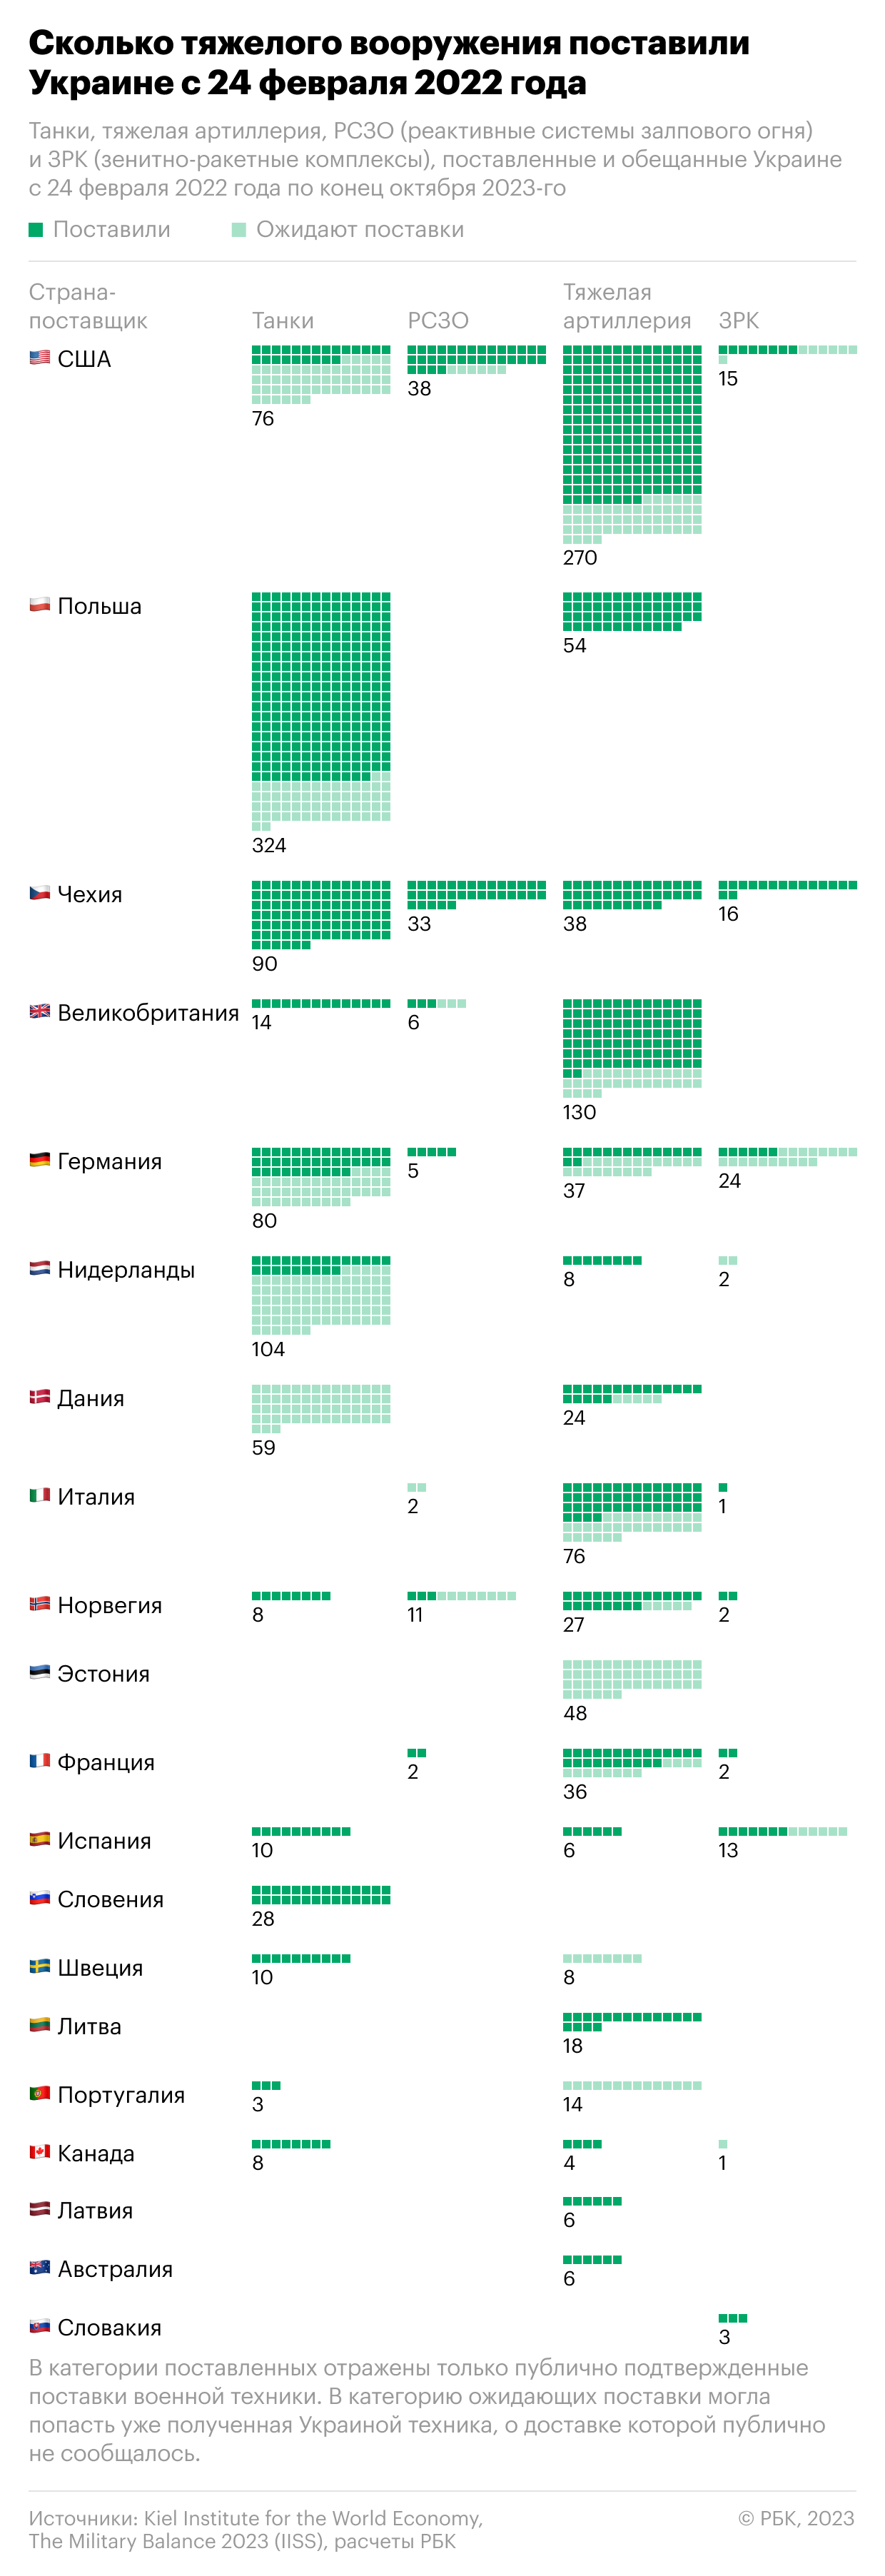 Как Запад сократил поставки вооружения Украине. Инфографика